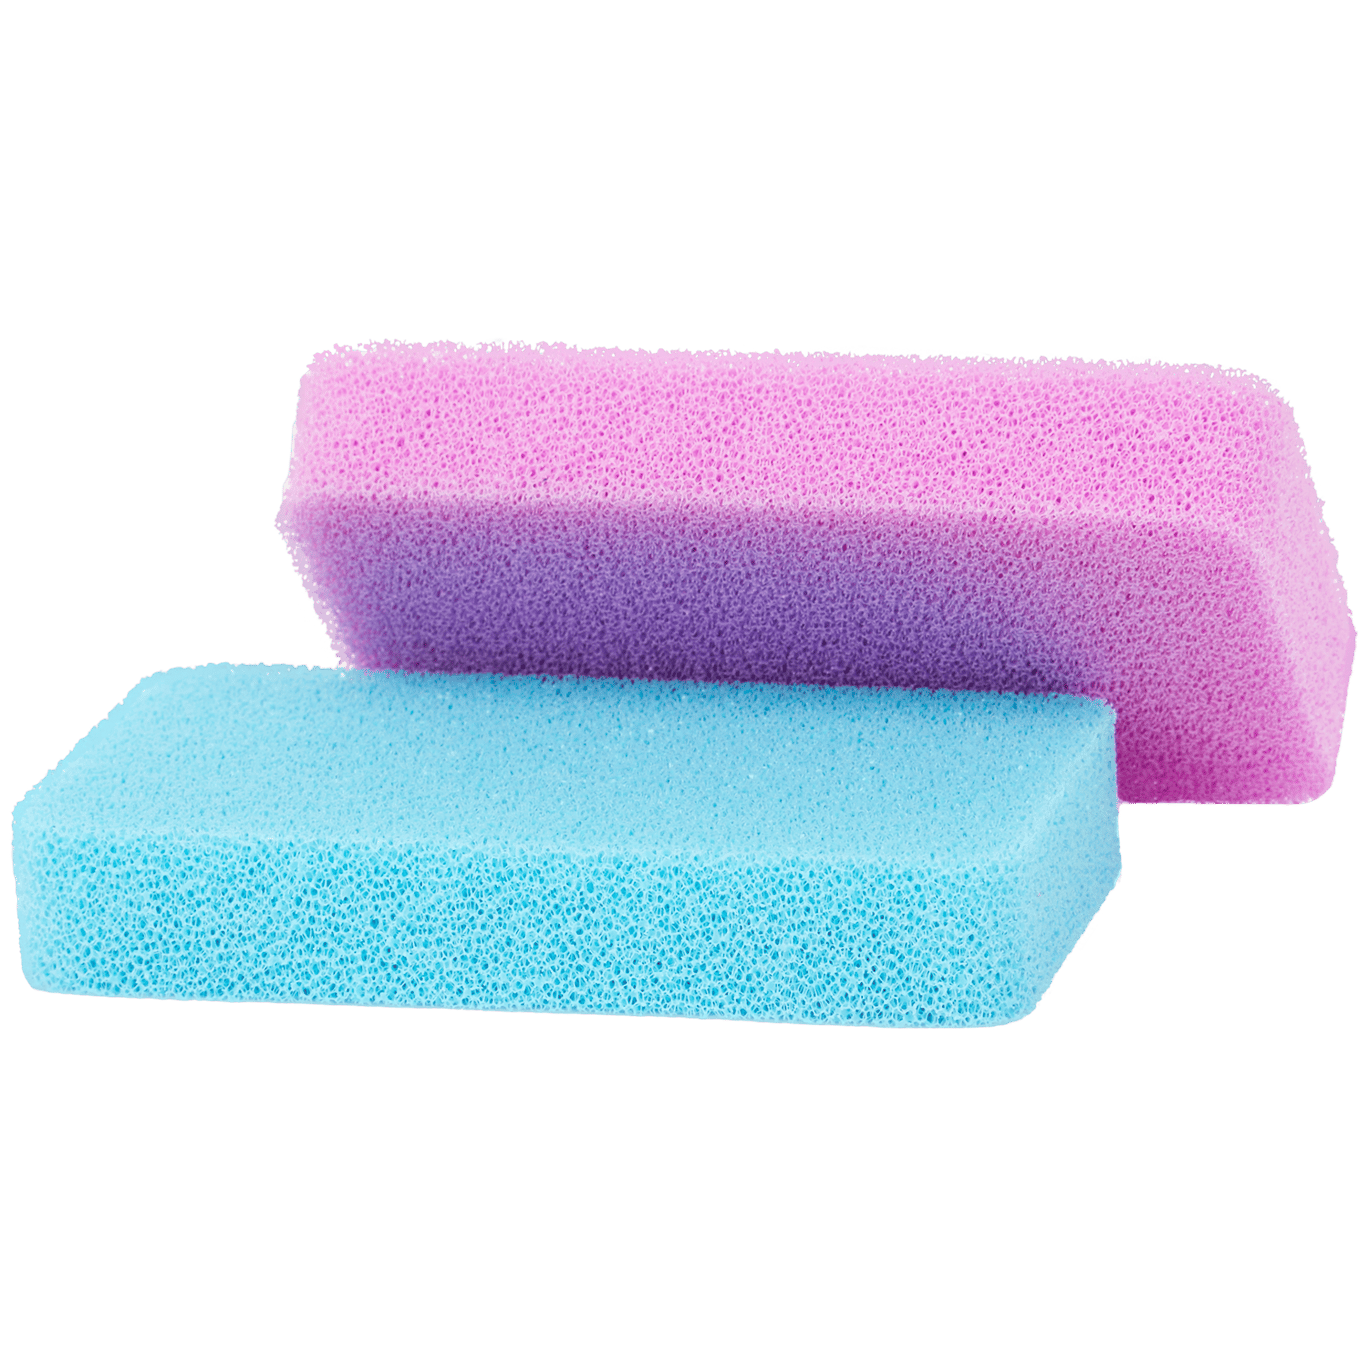 Esponjas de silicone CleanRite